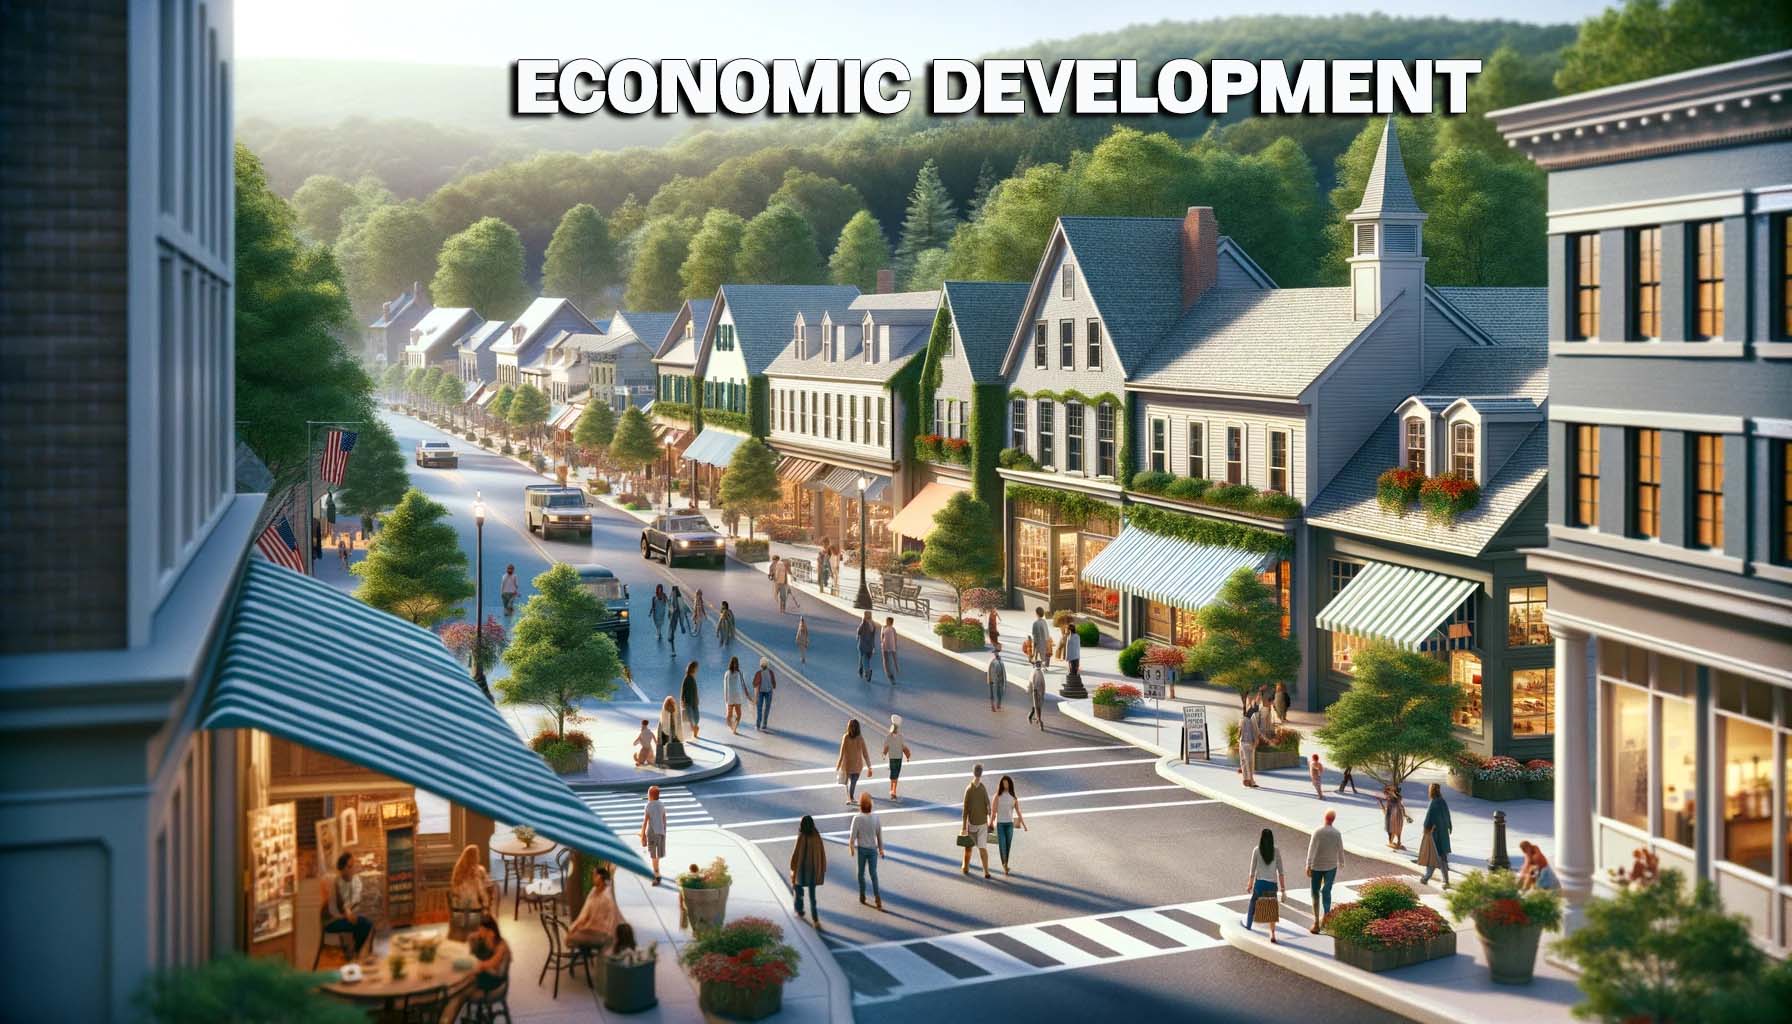 Economic Development news graphic